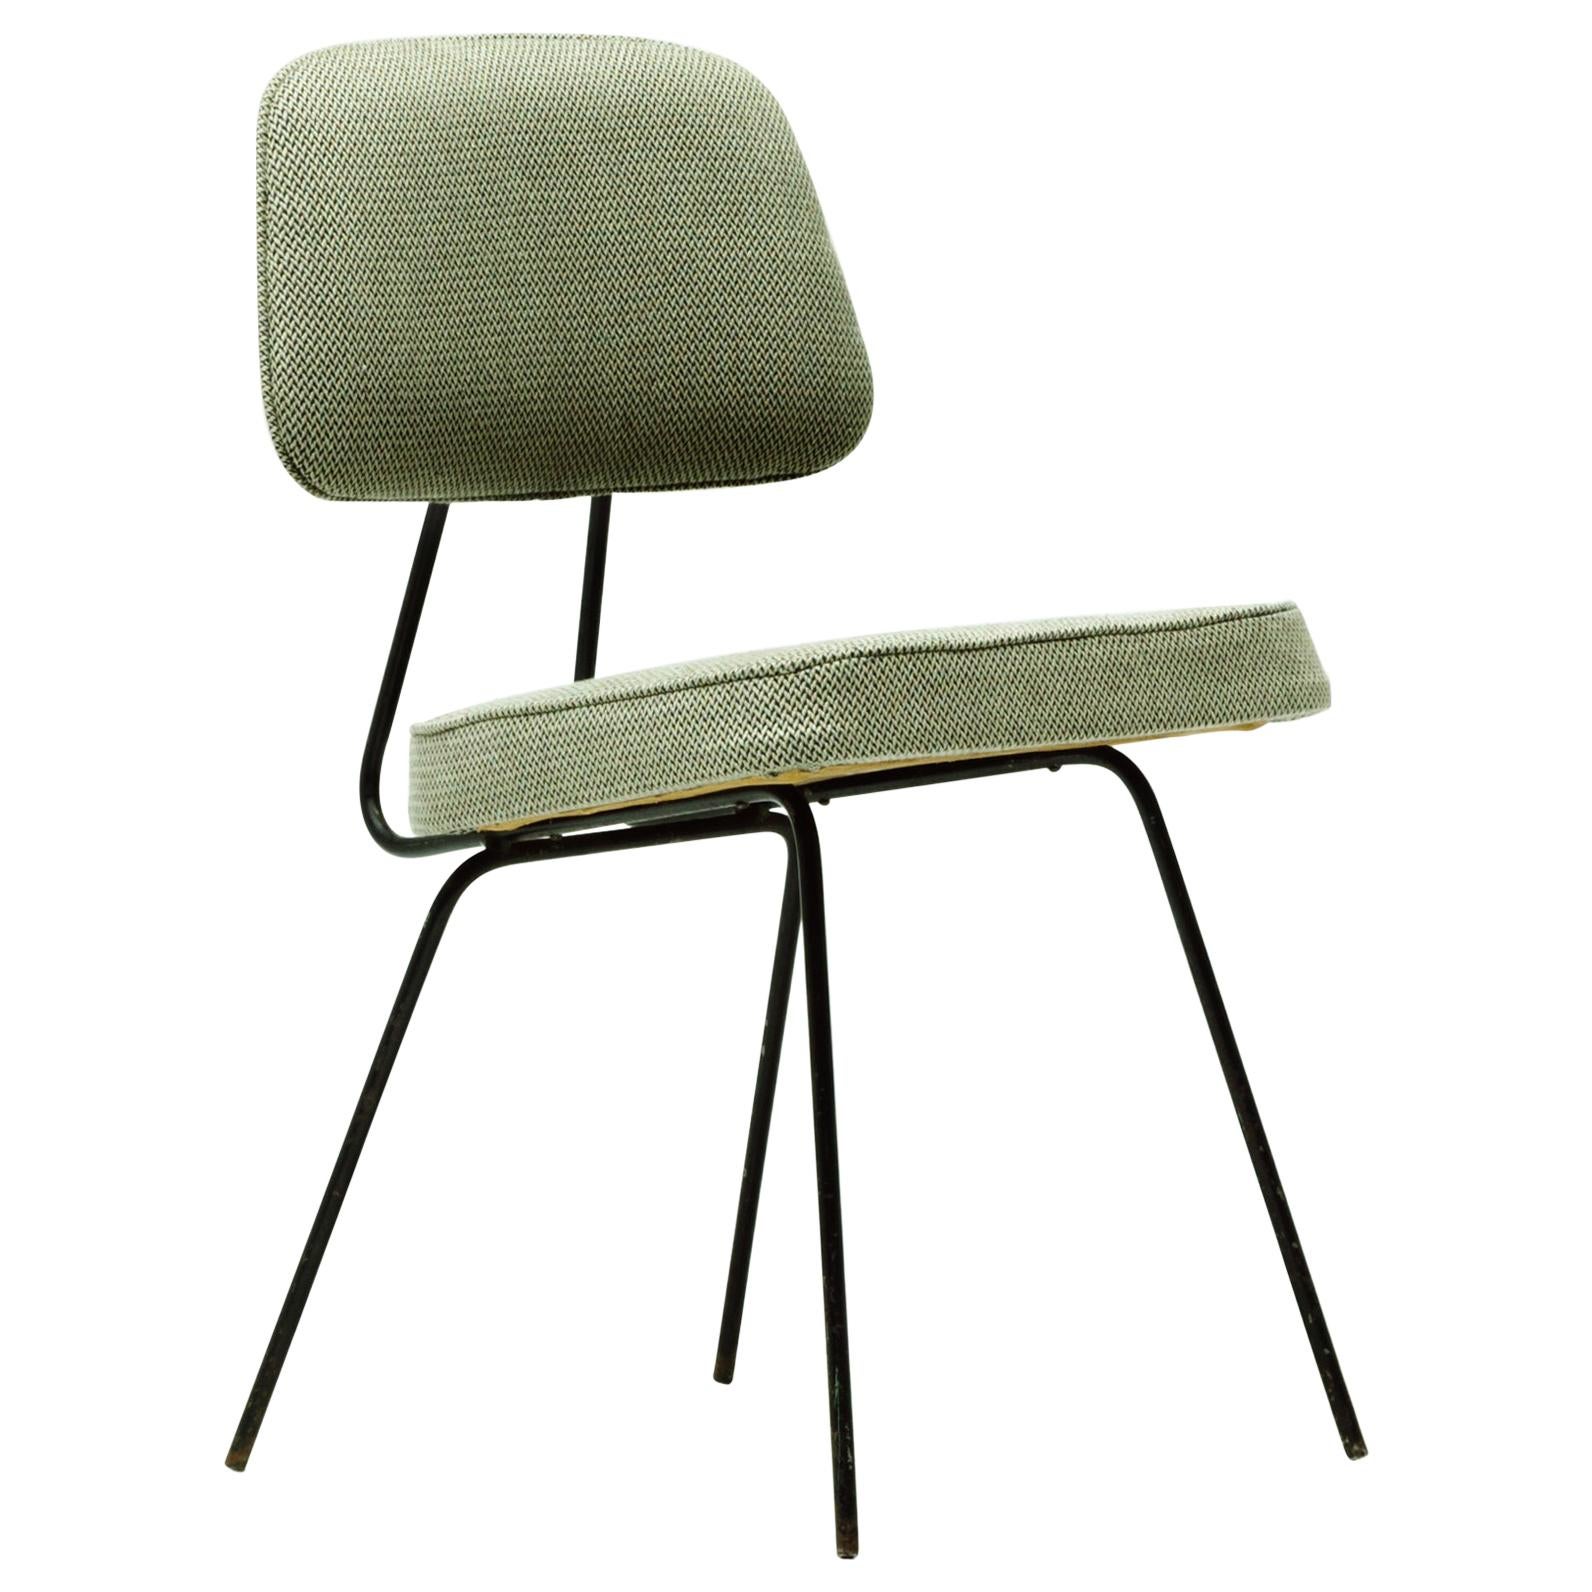 Paire de chaises par Carlo Hauner et Martin Eisler, design brésilien